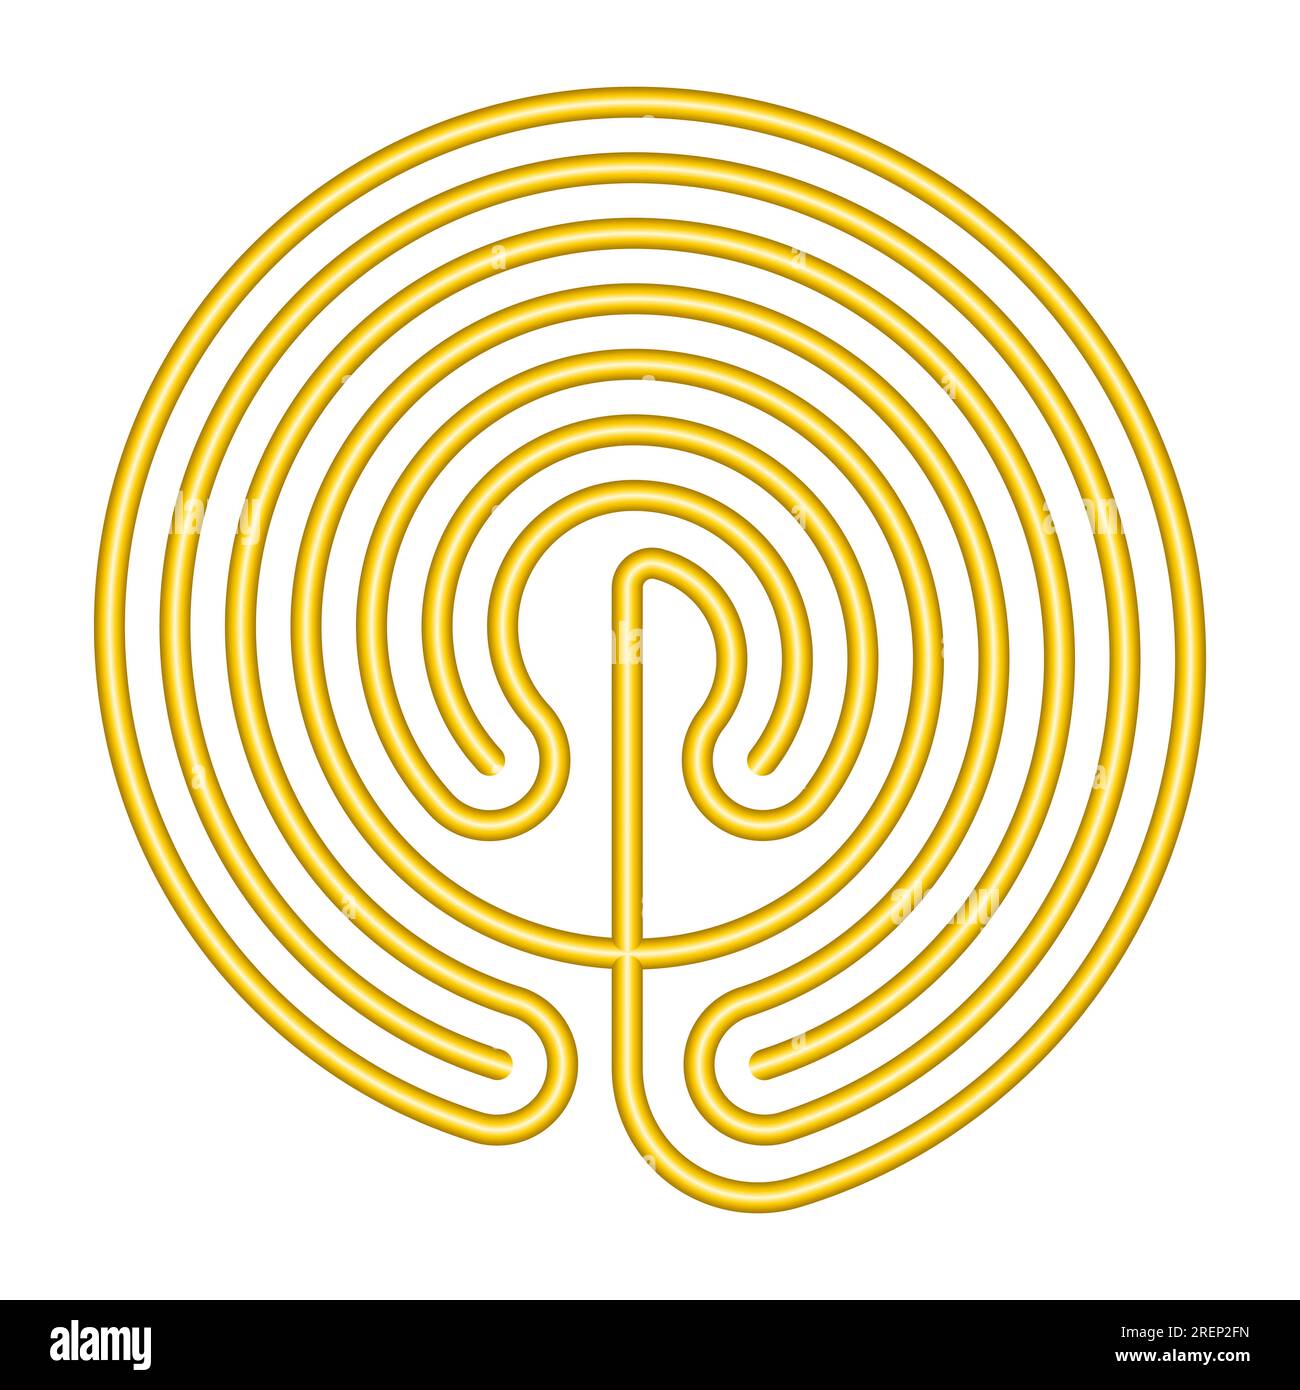 Kreisförmiges kretisches Labyrinth, goldfarben und im klassischen Design eines einzigen Weges in 7 Kursen, wie auf Münzen aus Knossos dargestellt. Stockfoto